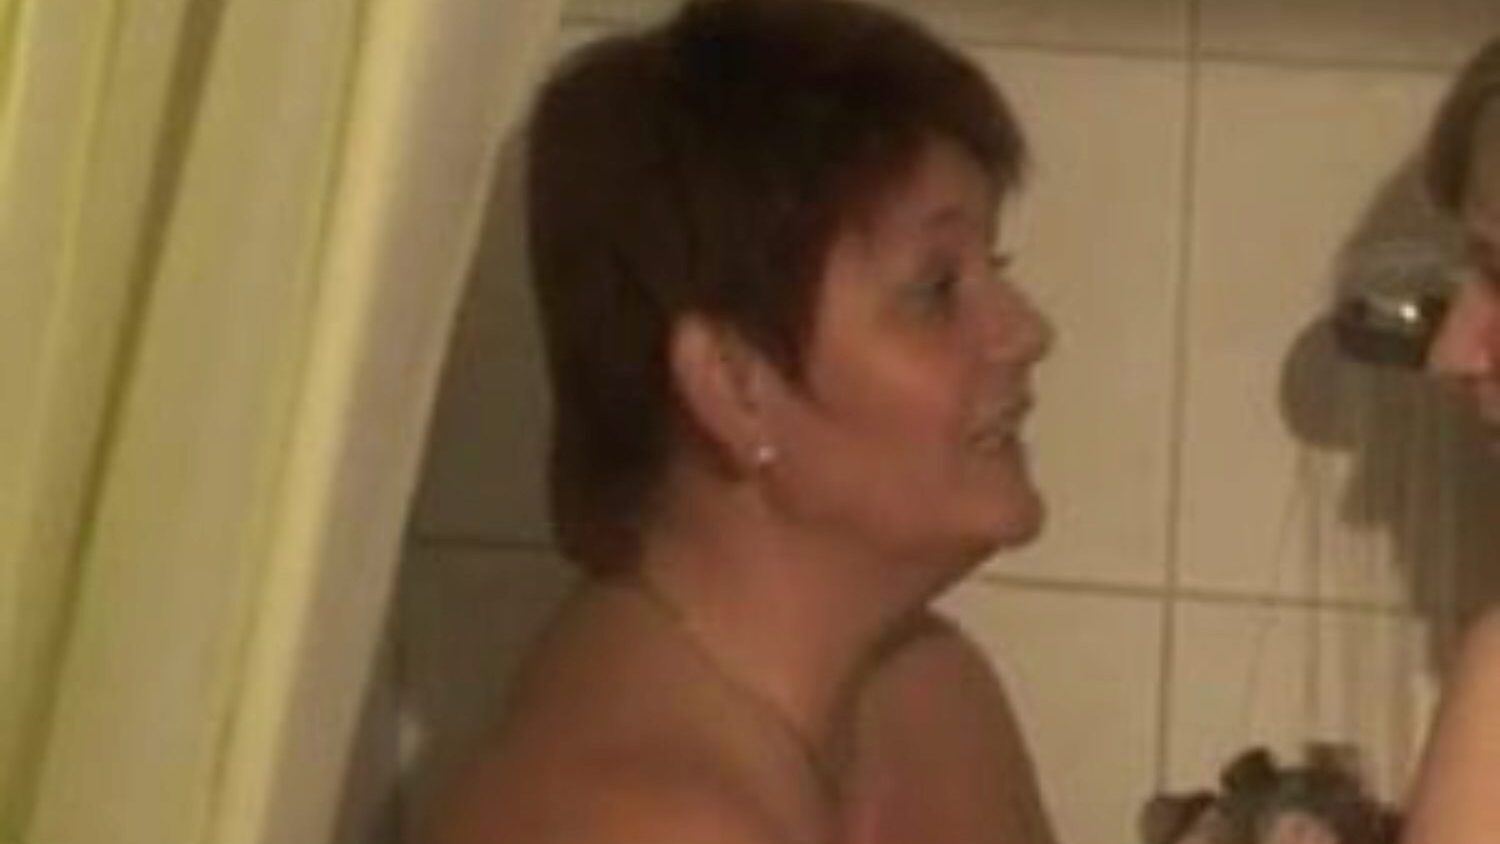 iki bi-kız duş alıyor: bedava lezbiyen porno video 76 - xhamster izle 2 bi-kız, xhamster'da bedava seks için tüp sevişme film sahnesini duş alıyor, Alman lezbiyen, annenin otoriter koleksiyonuyla fuck & bbw pornografi film dizileri